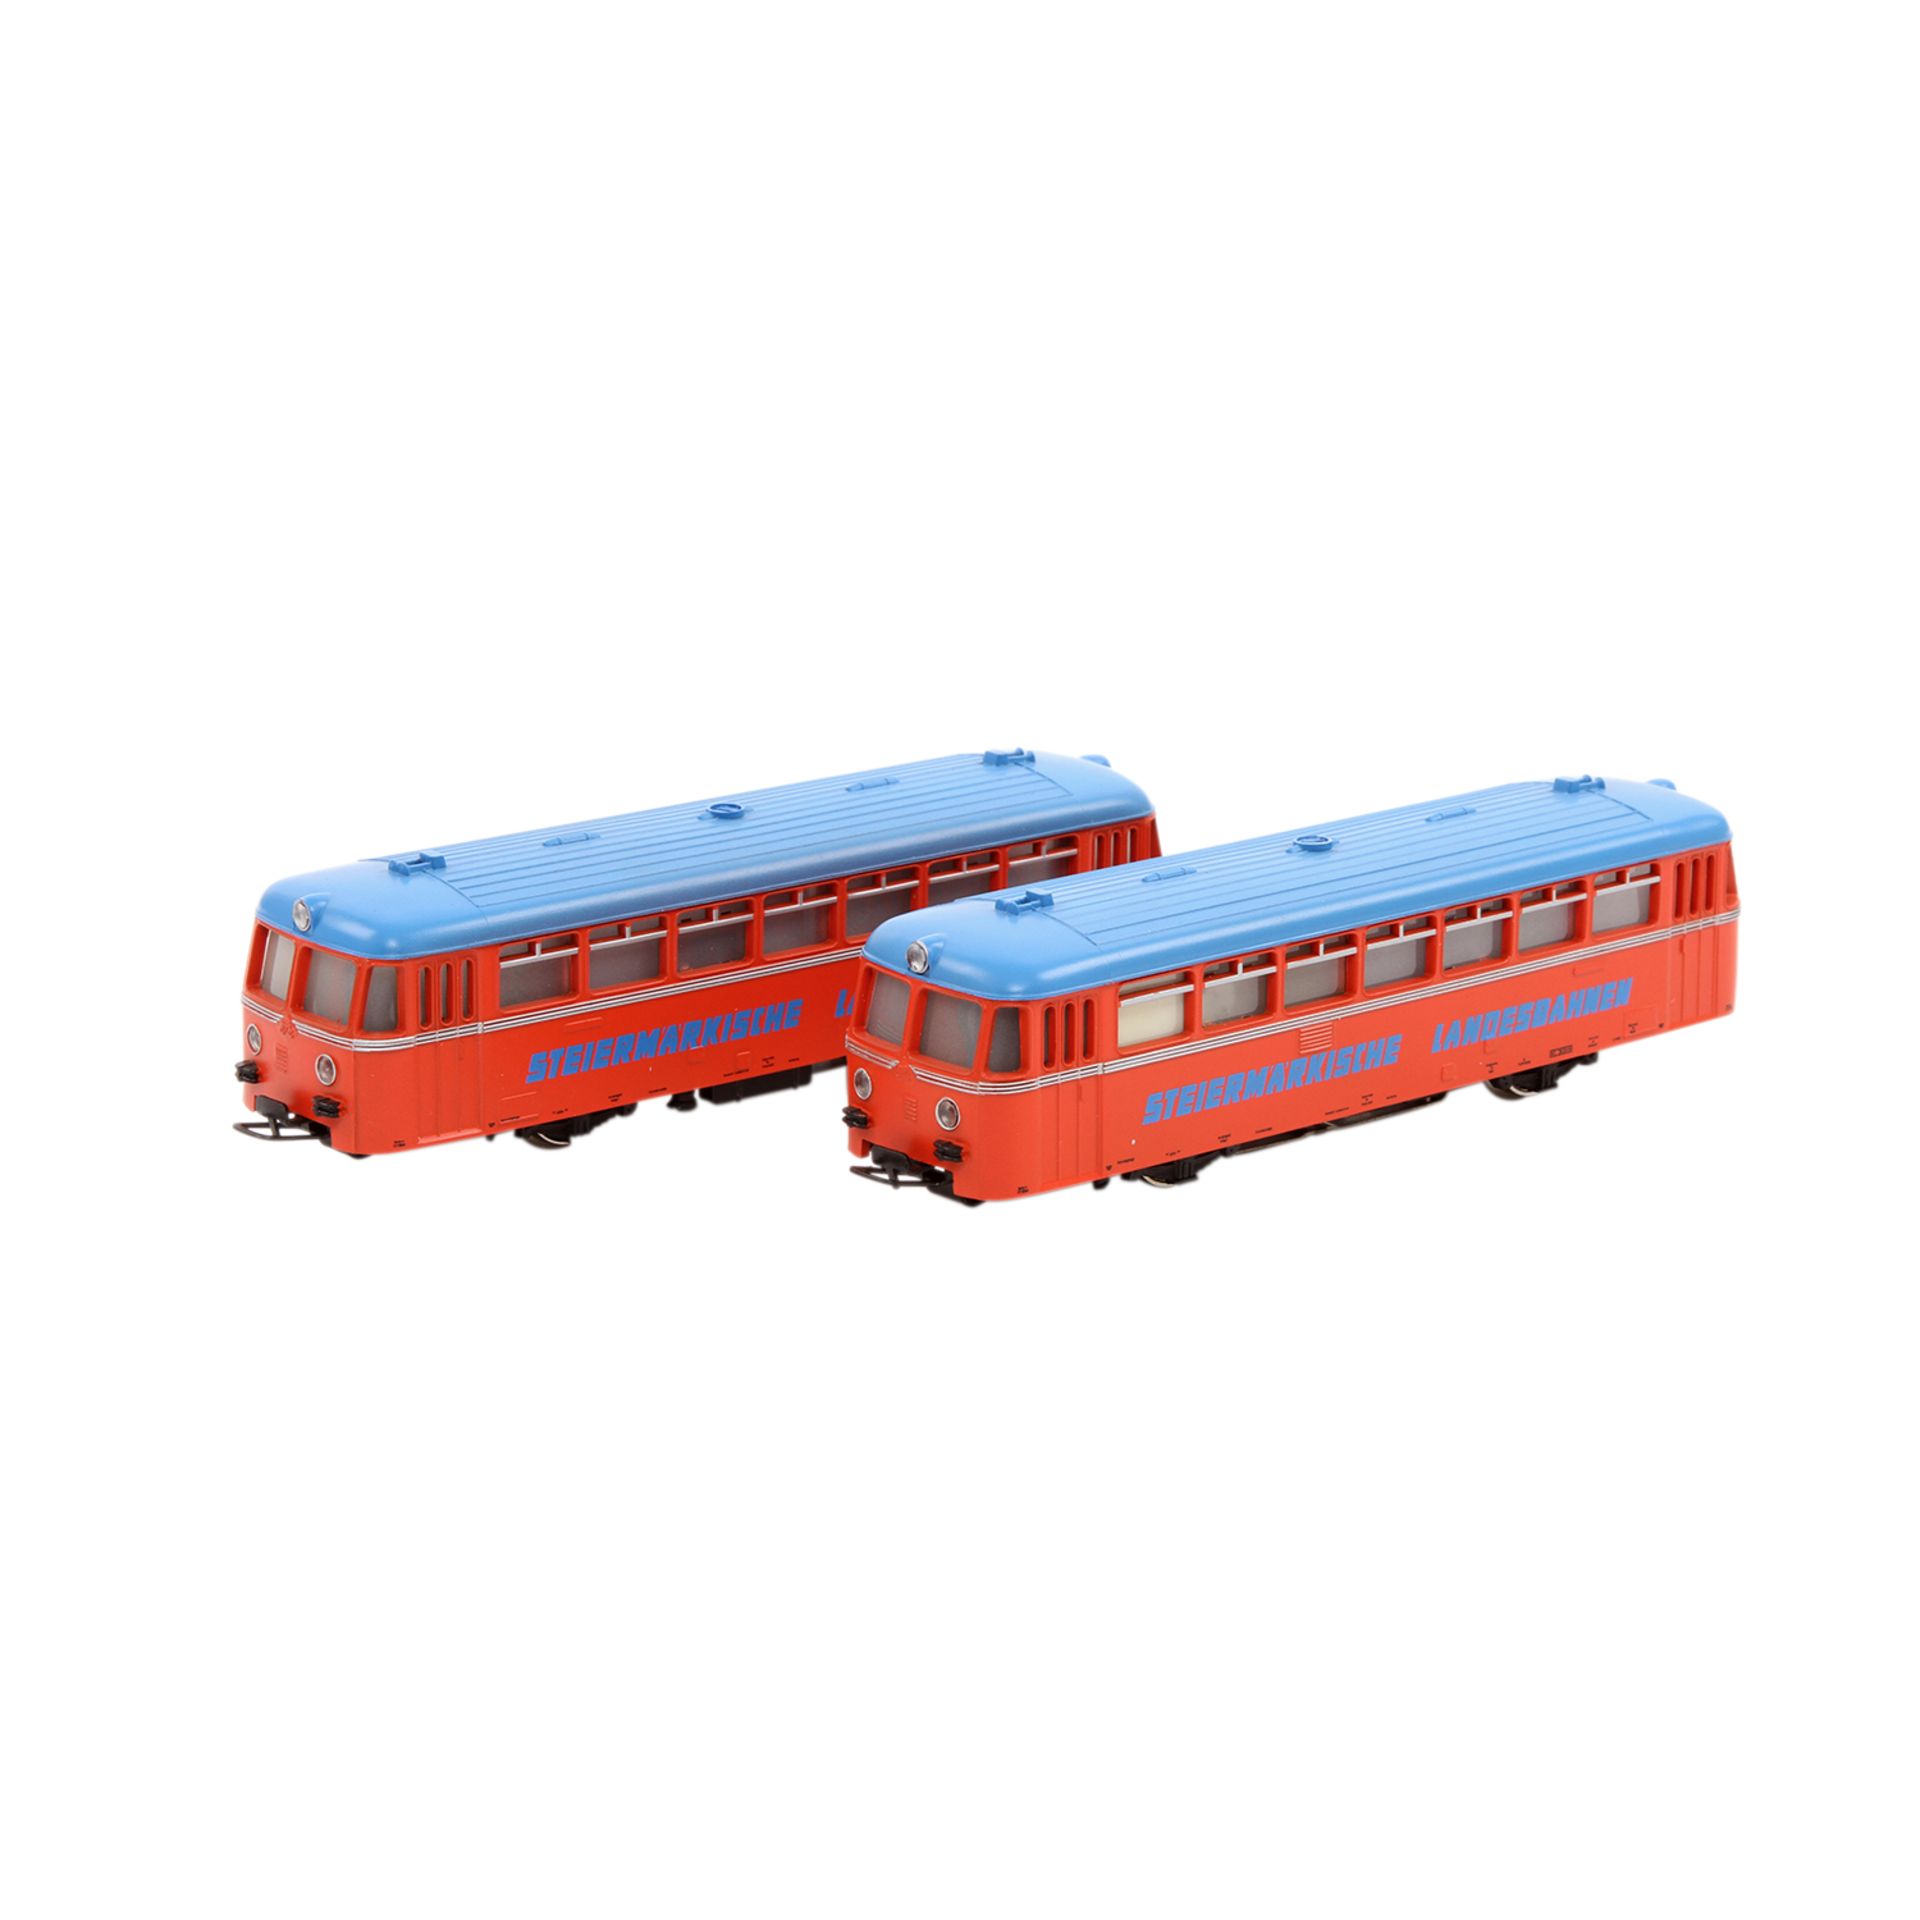 MÄRKLIN Schienenbus mit Beiwagen 3140, Spur H0, Kunststoff-Gehäuse, rot m. blauem Dach, VT 21 und VS